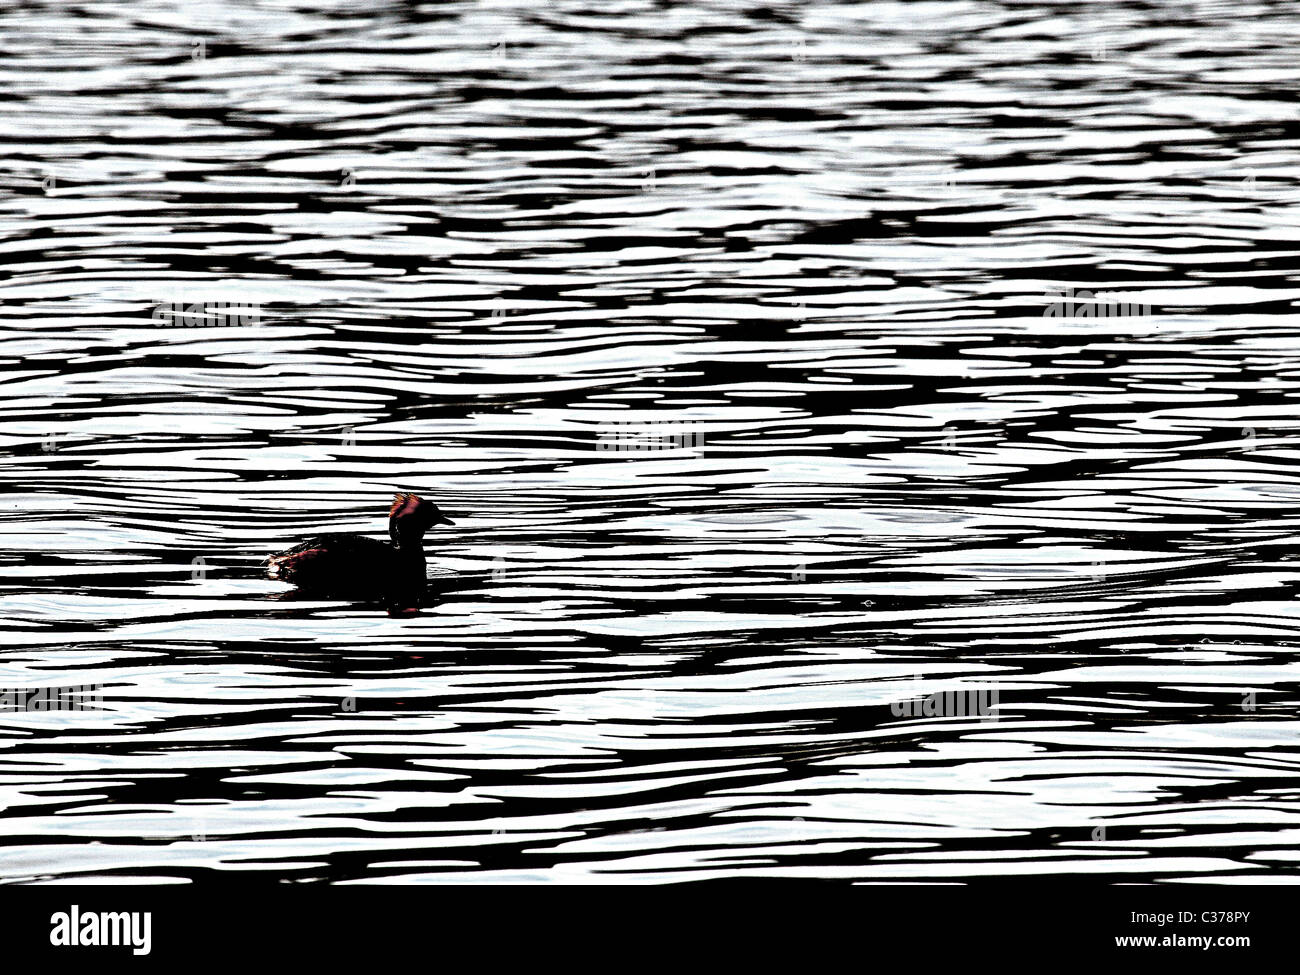 [Slawonischen Grebe] [Podiceps Auritus] auf dem Wasser des Loch Ruthven, Inverness-Shire, verbessert [Kontrast] Bild erzeugen Stockfoto